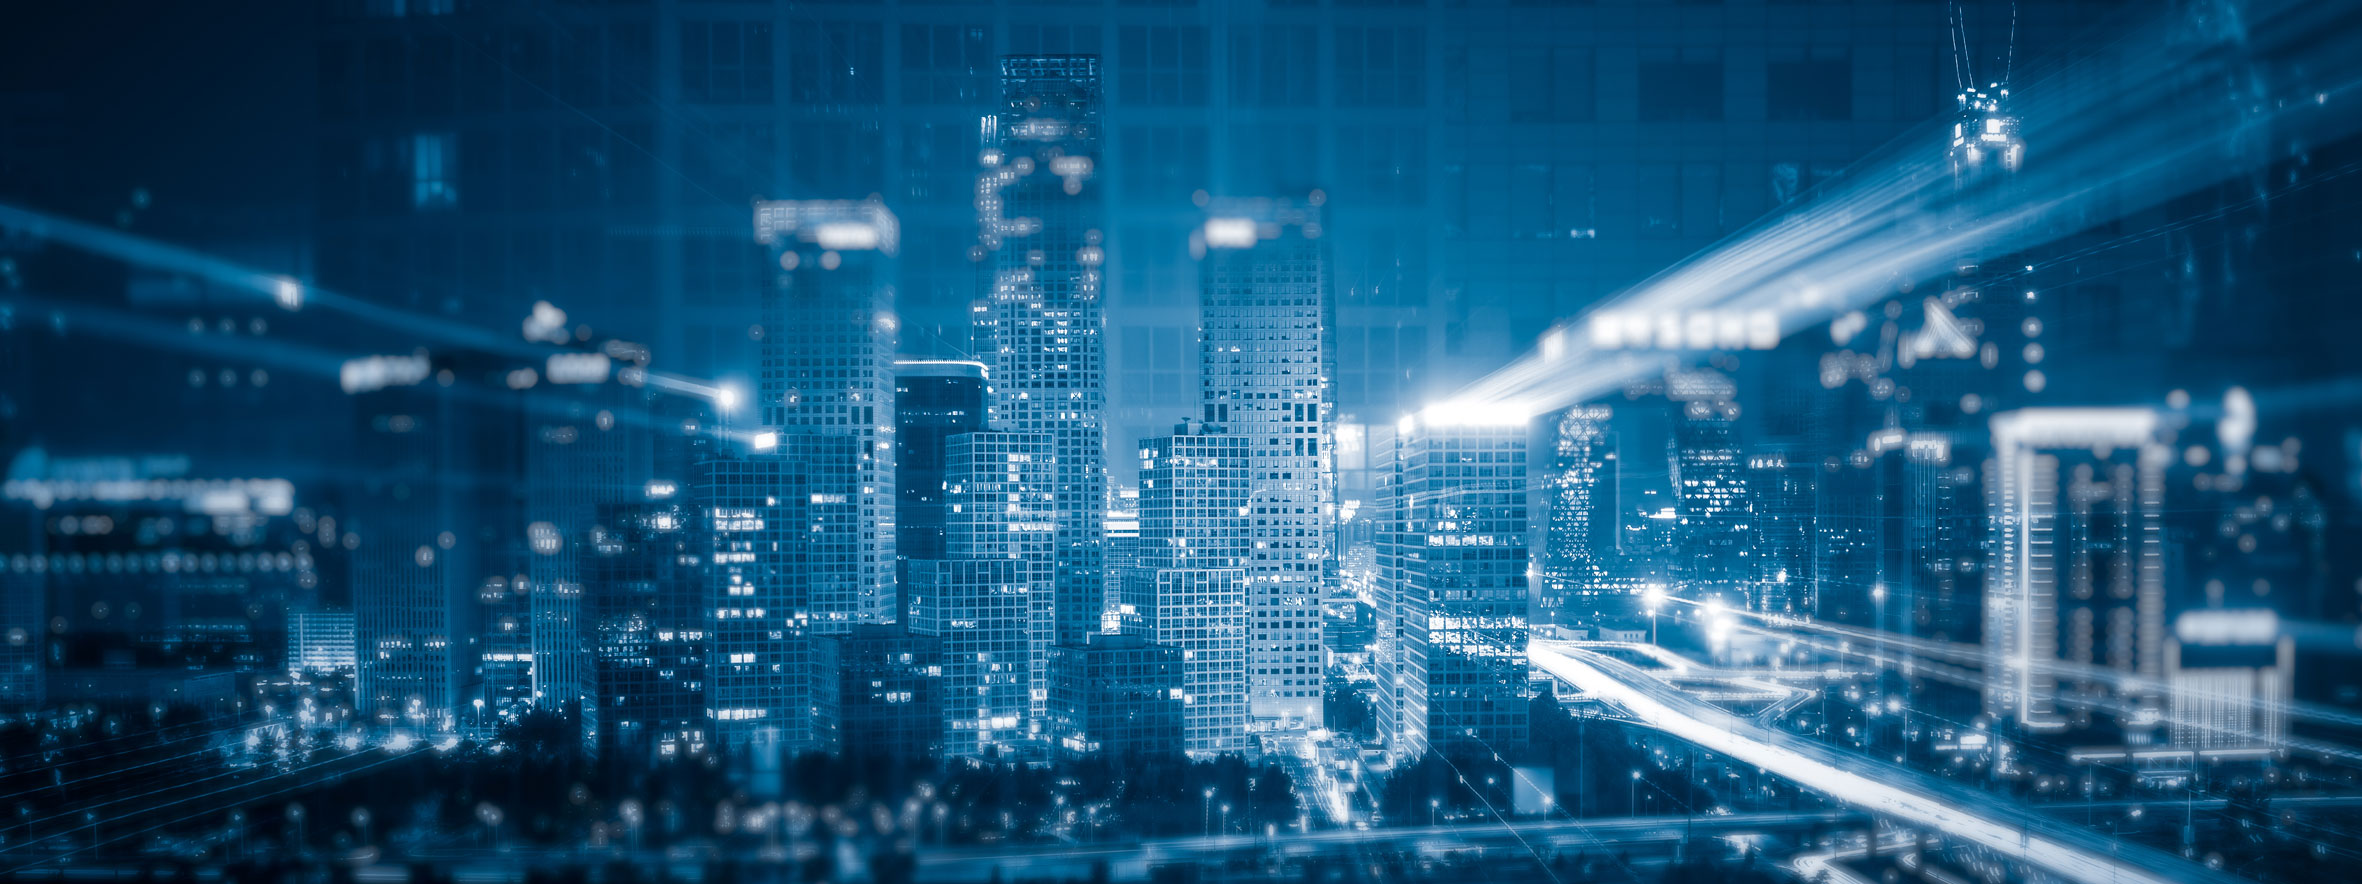 La importancia de los Nodos IoT en el desarrollo de ciudades y edificios inteligentes